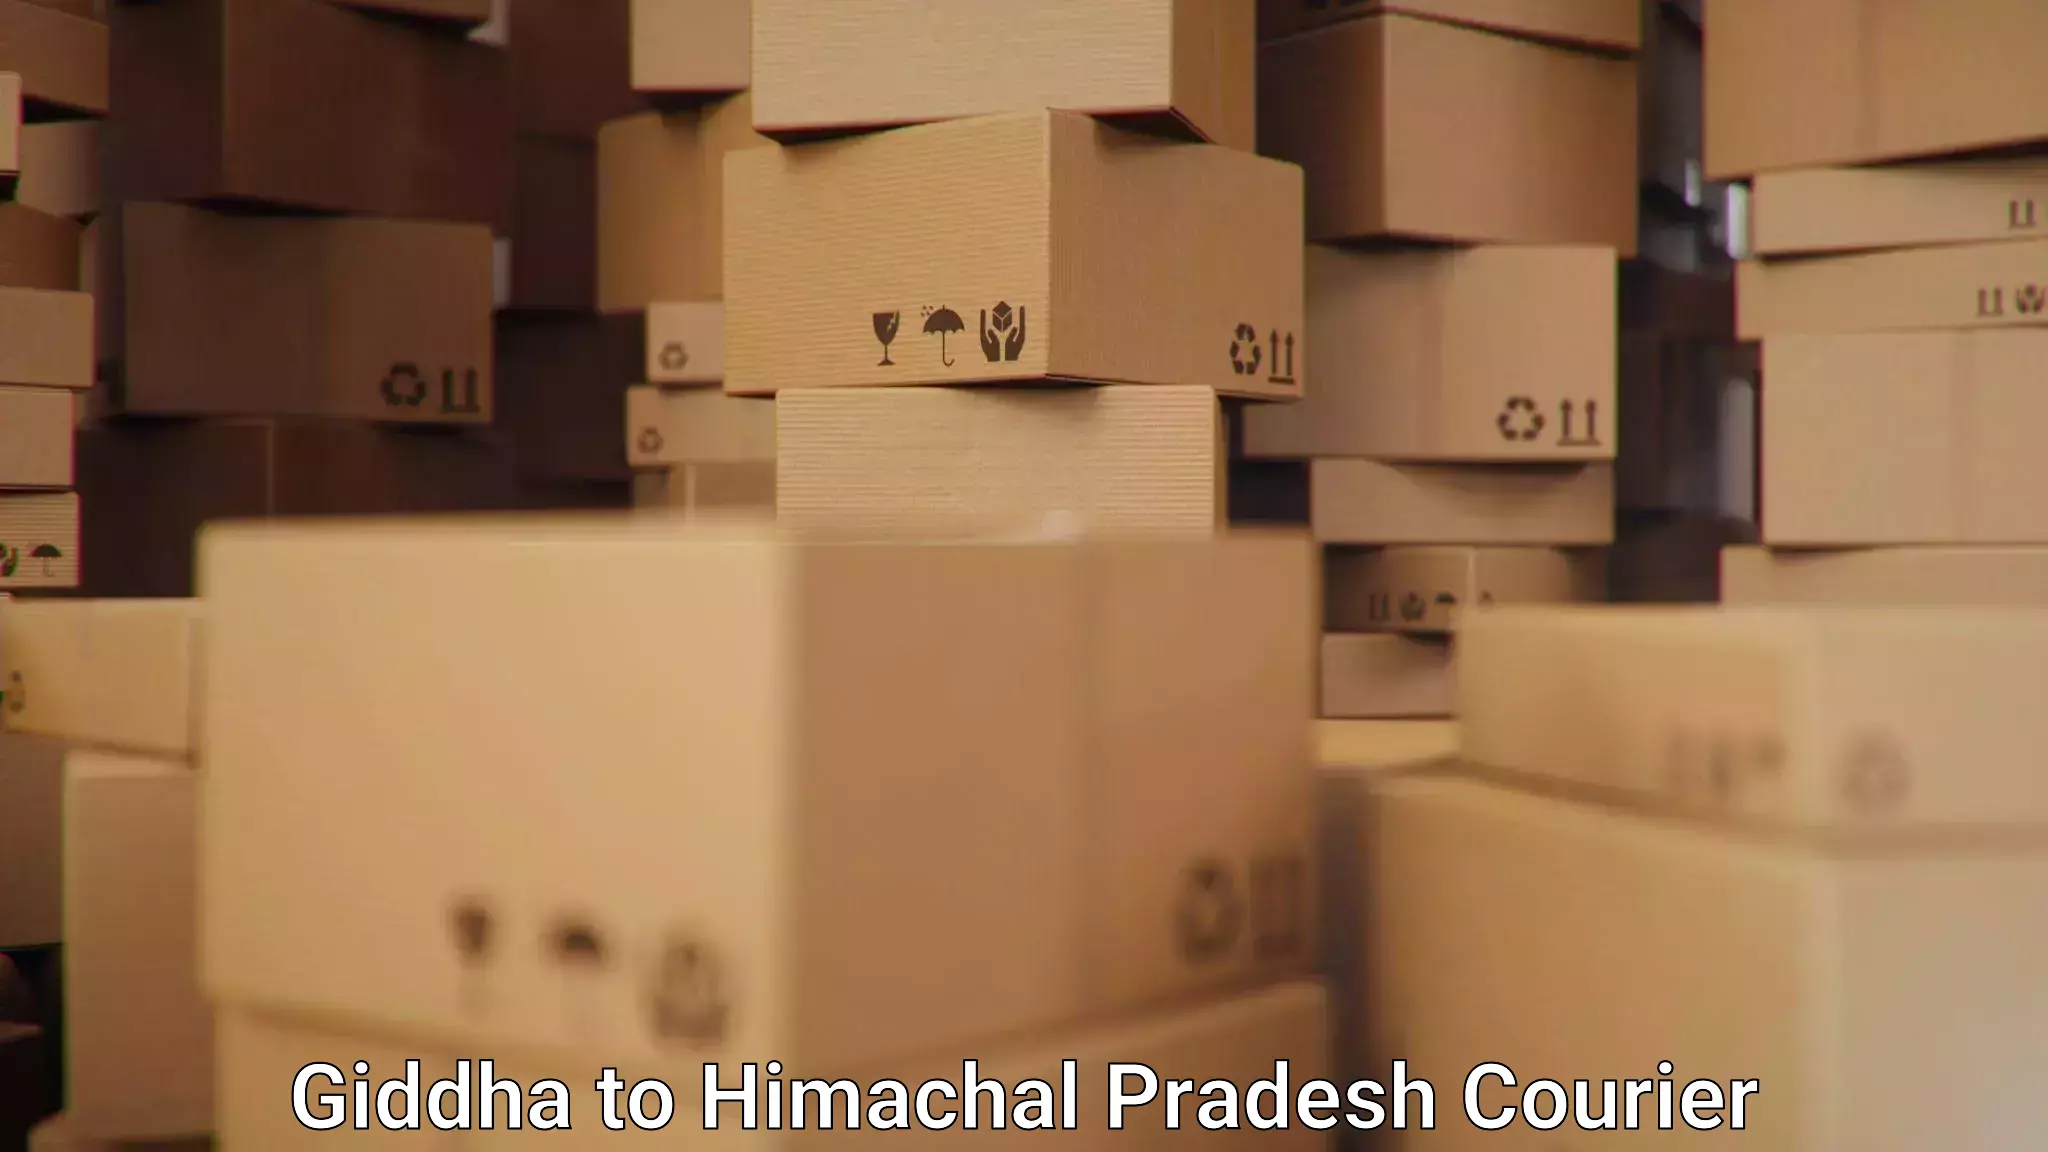 Lightweight courier Giddha to Una Himachal Pradesh